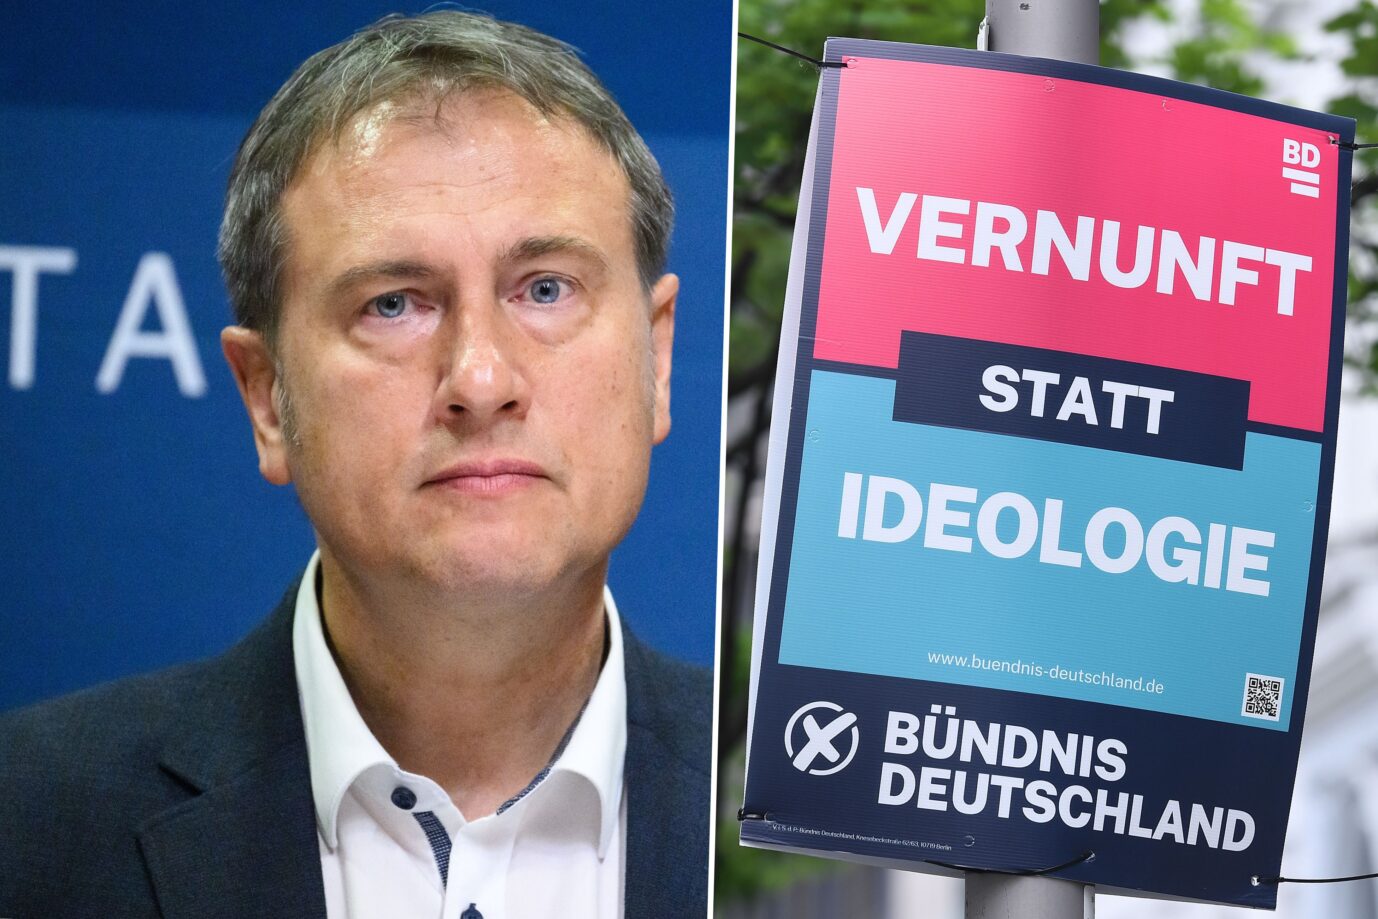 Das Bild ist eine Montage aus zwei Fotos. Links zu sehen ist der Parteichef vom Bündnis Deutschland, Steffen Große. Rechts zu sehen ist ein Wahlplakat der Partei.